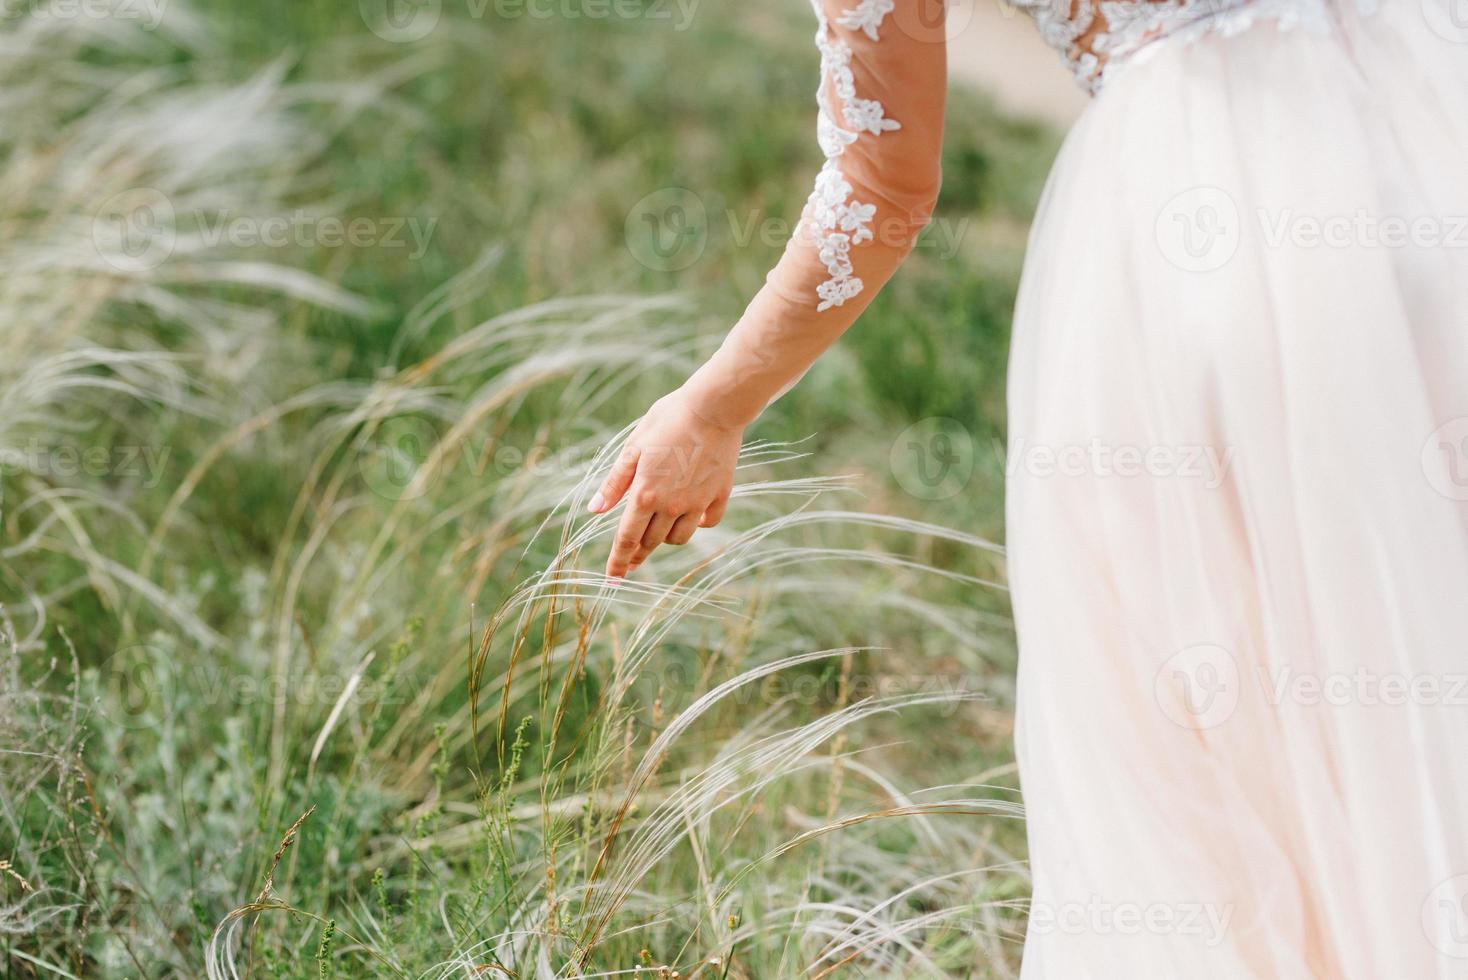 kleed de bruid aan in een trouwjurk met korset en vetersluiting foto